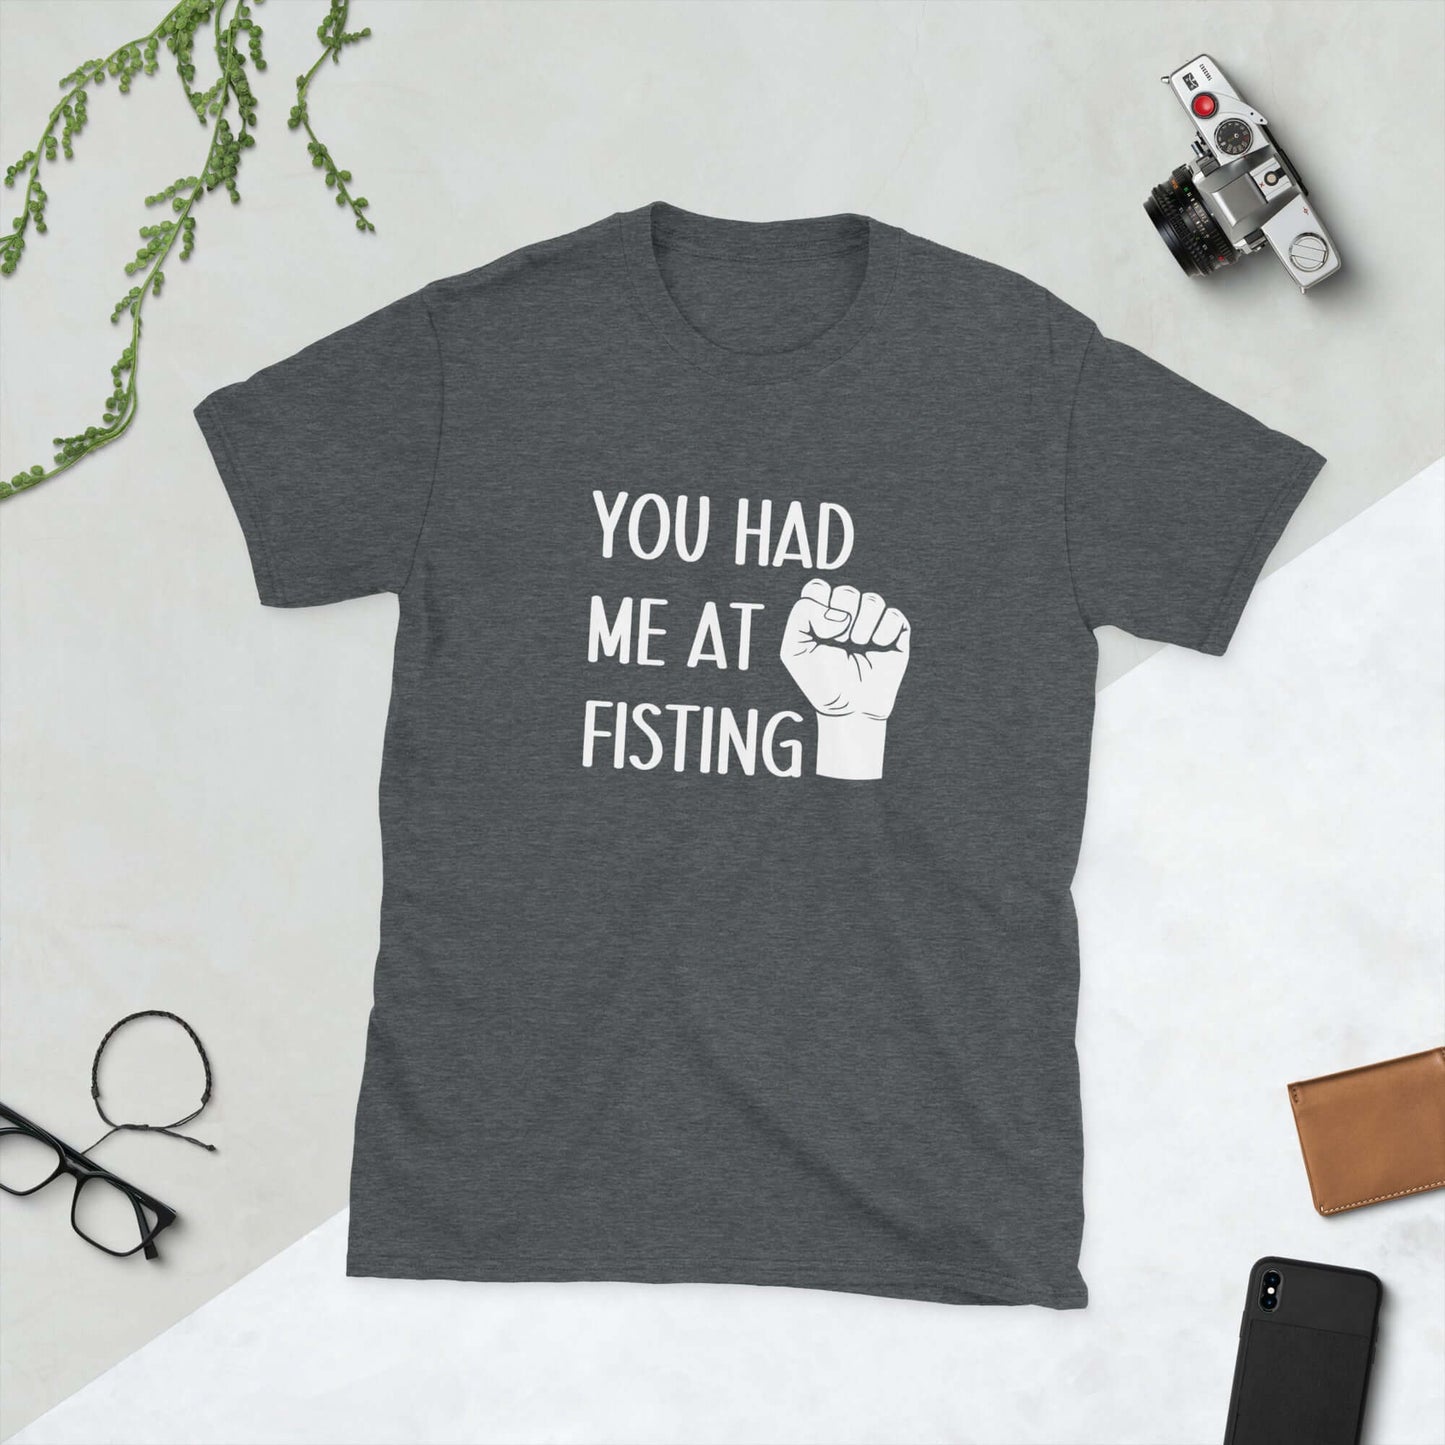 You had me at fisting t-shirt.